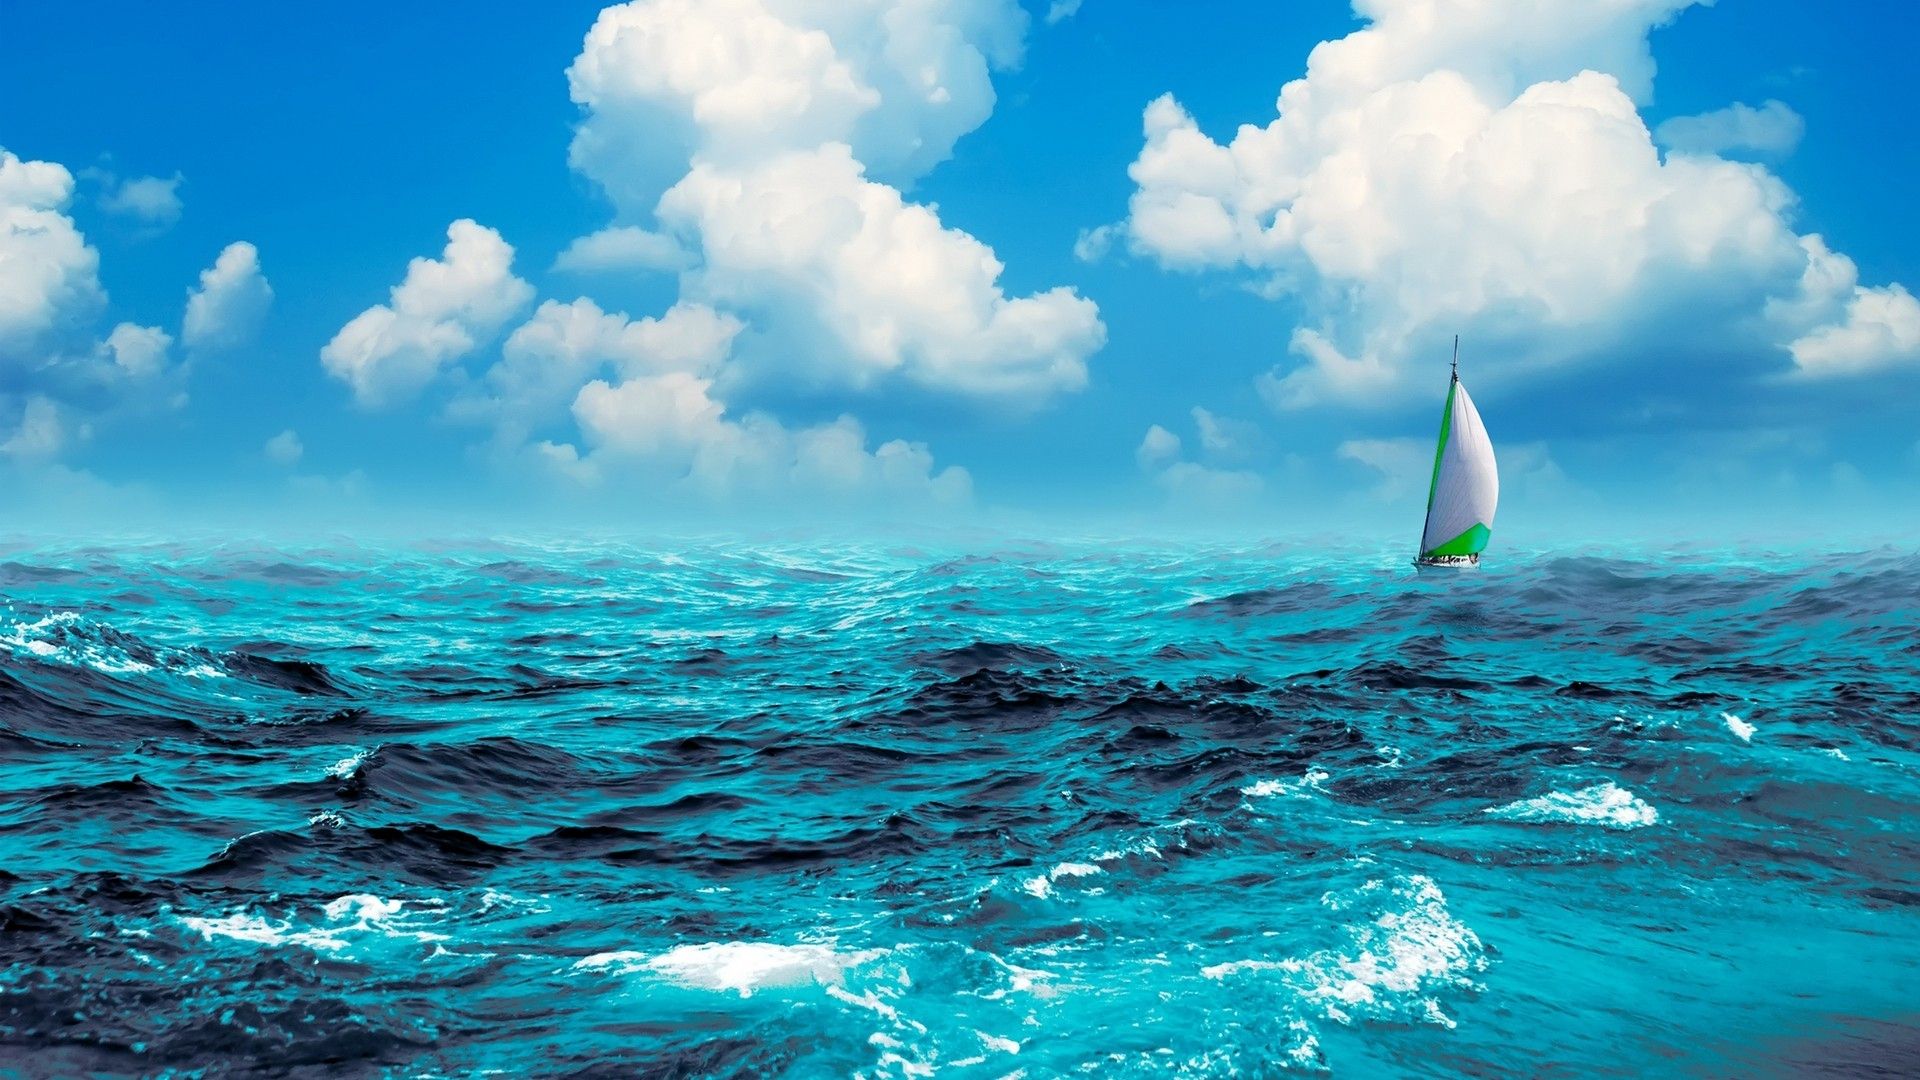 Blue Water Sailing Wallpaper. Sailing